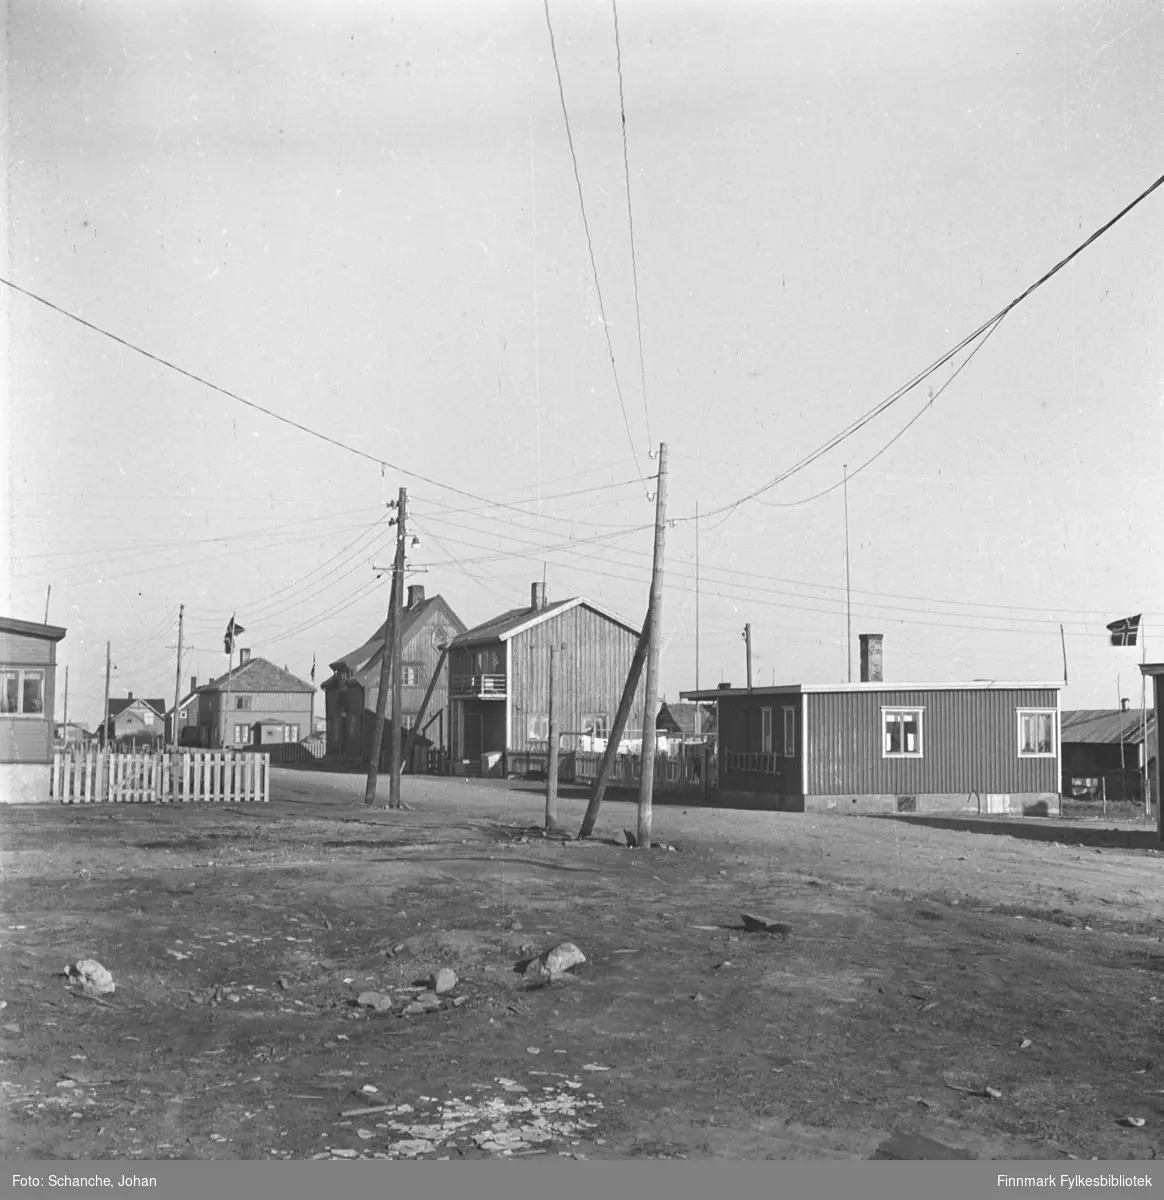 Et gateparti fra Damsveien i Vadsø. Bungalover. Den første bungaloven fra venstre hører til Torvald Berg og den andre til Gandola.  Fremst på bildet grusvei og to strømstolper.